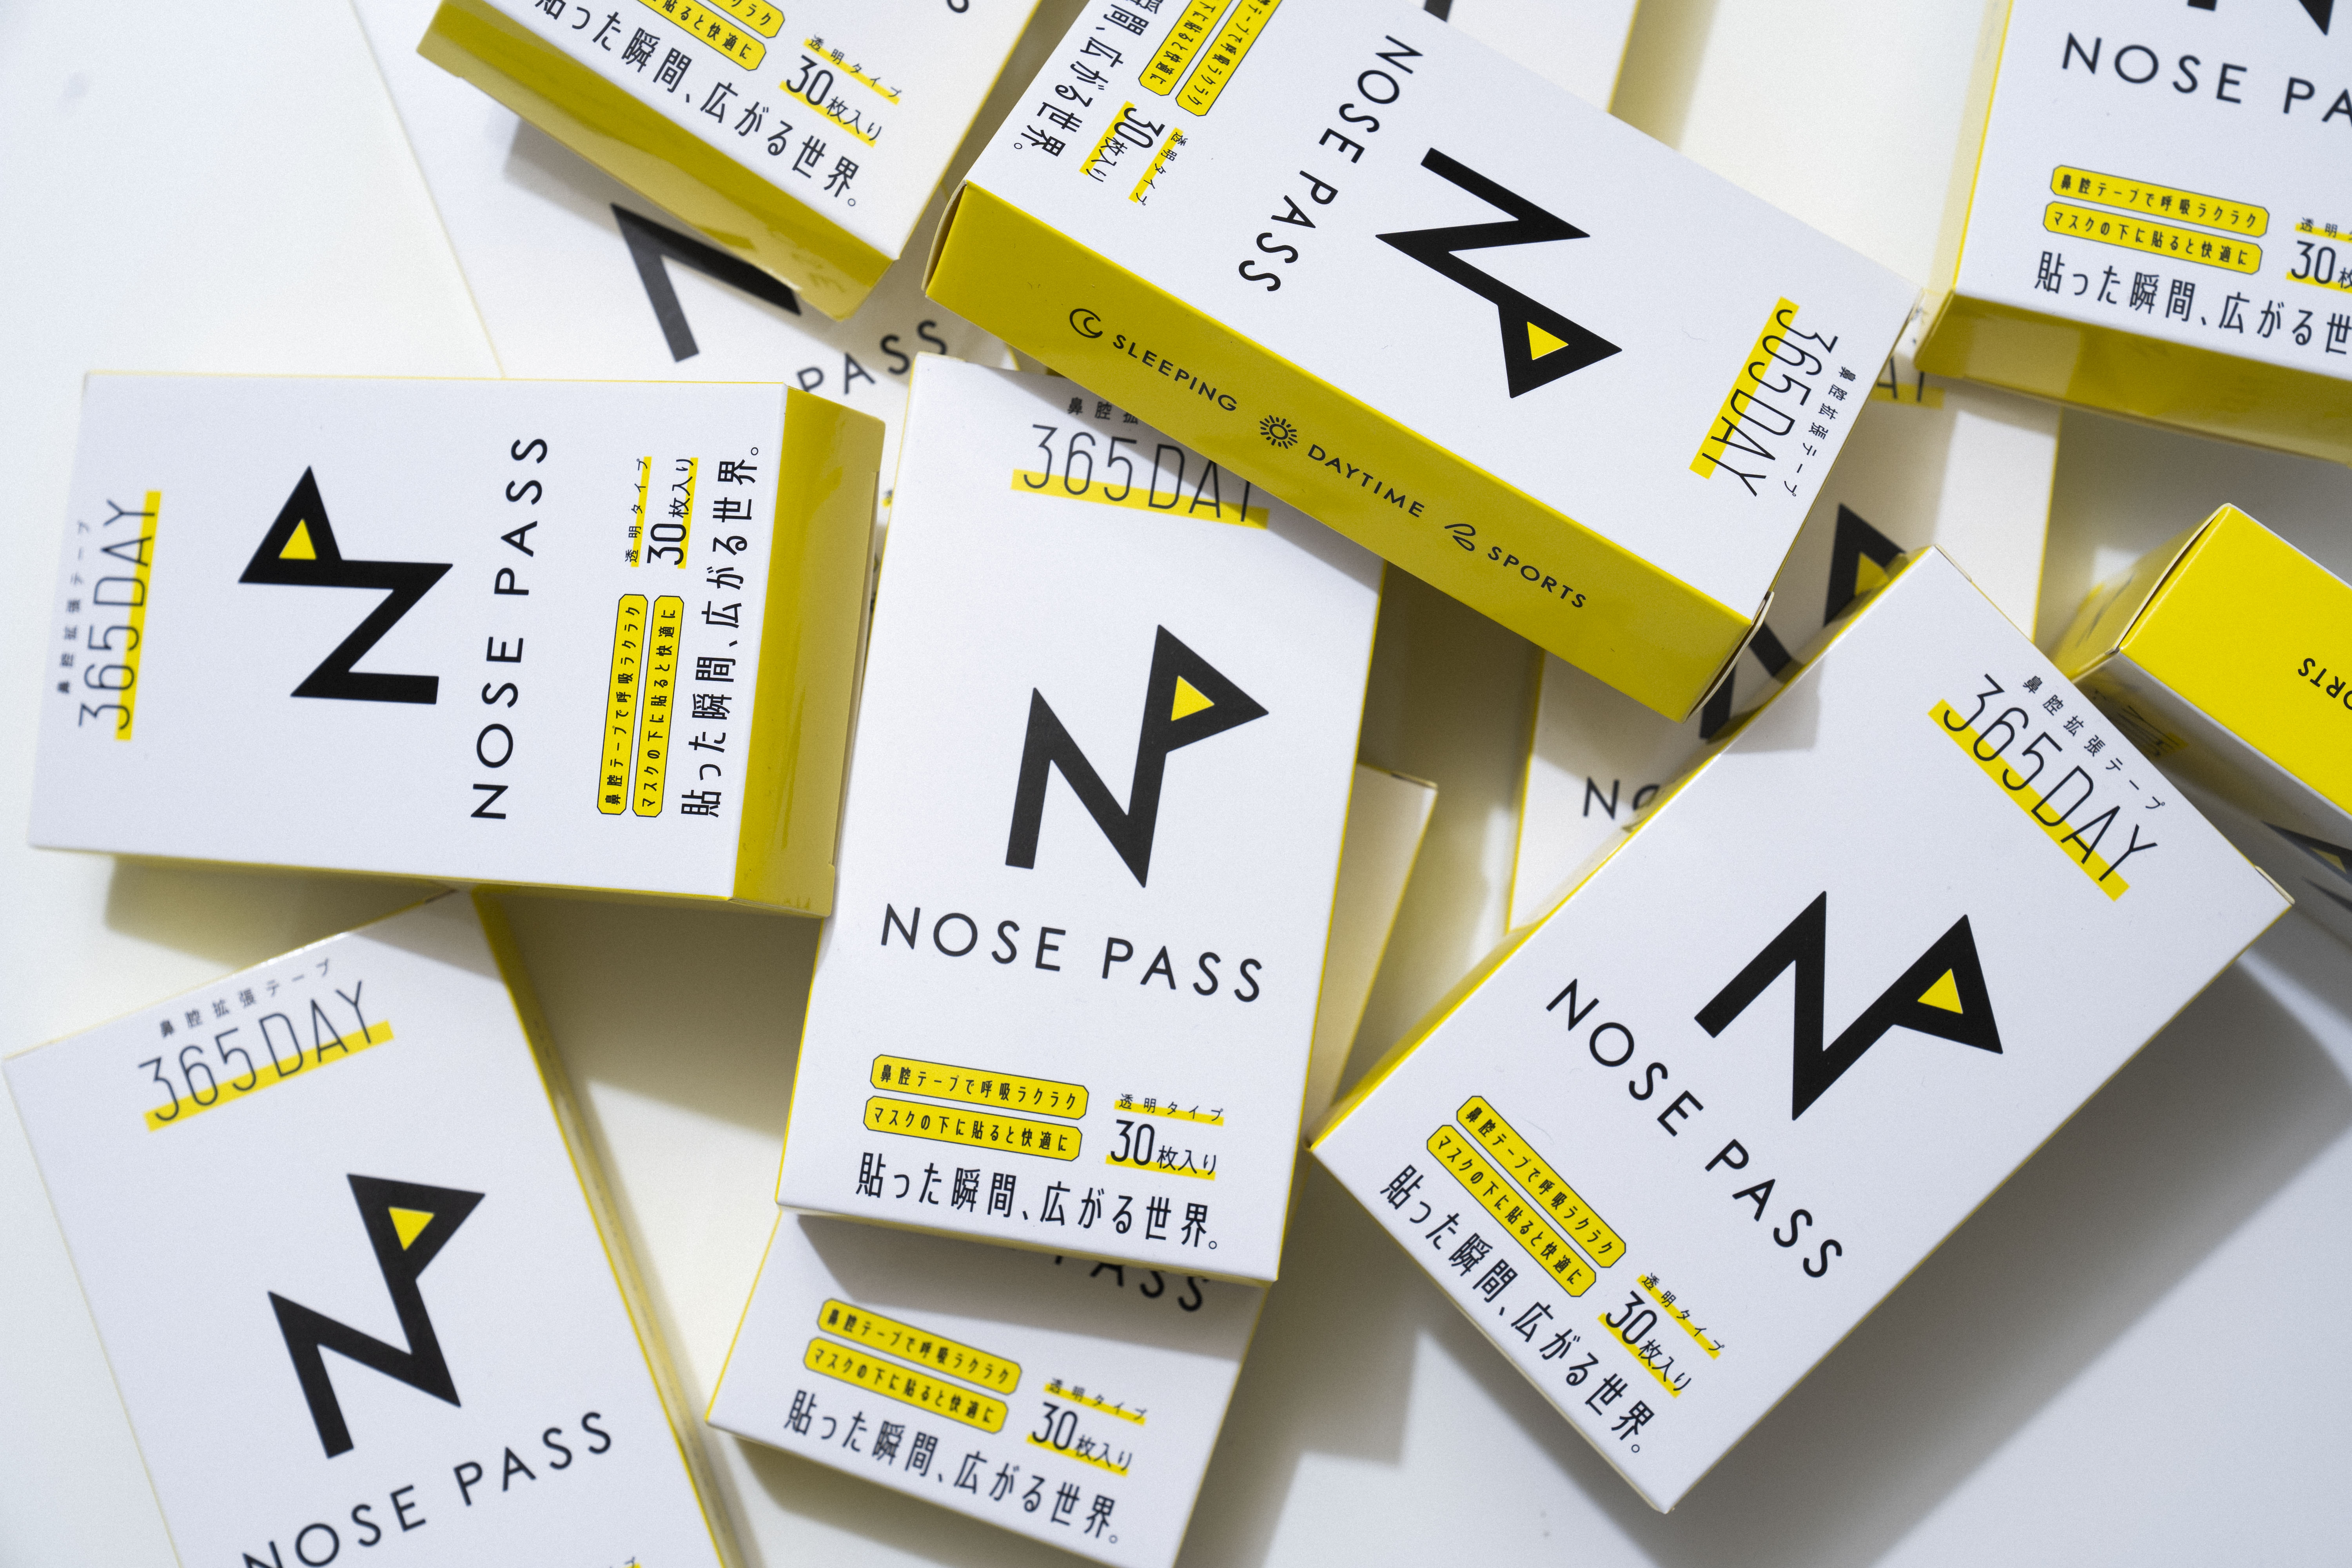 ハピラフ 初代d2cブランドとしてnose Pass ノーパス を代表富田が27歳の誕生日にリリース致しました 鼻詰まり に悩む全ての人に ハピラフデジタル合同会社のプレスリリース